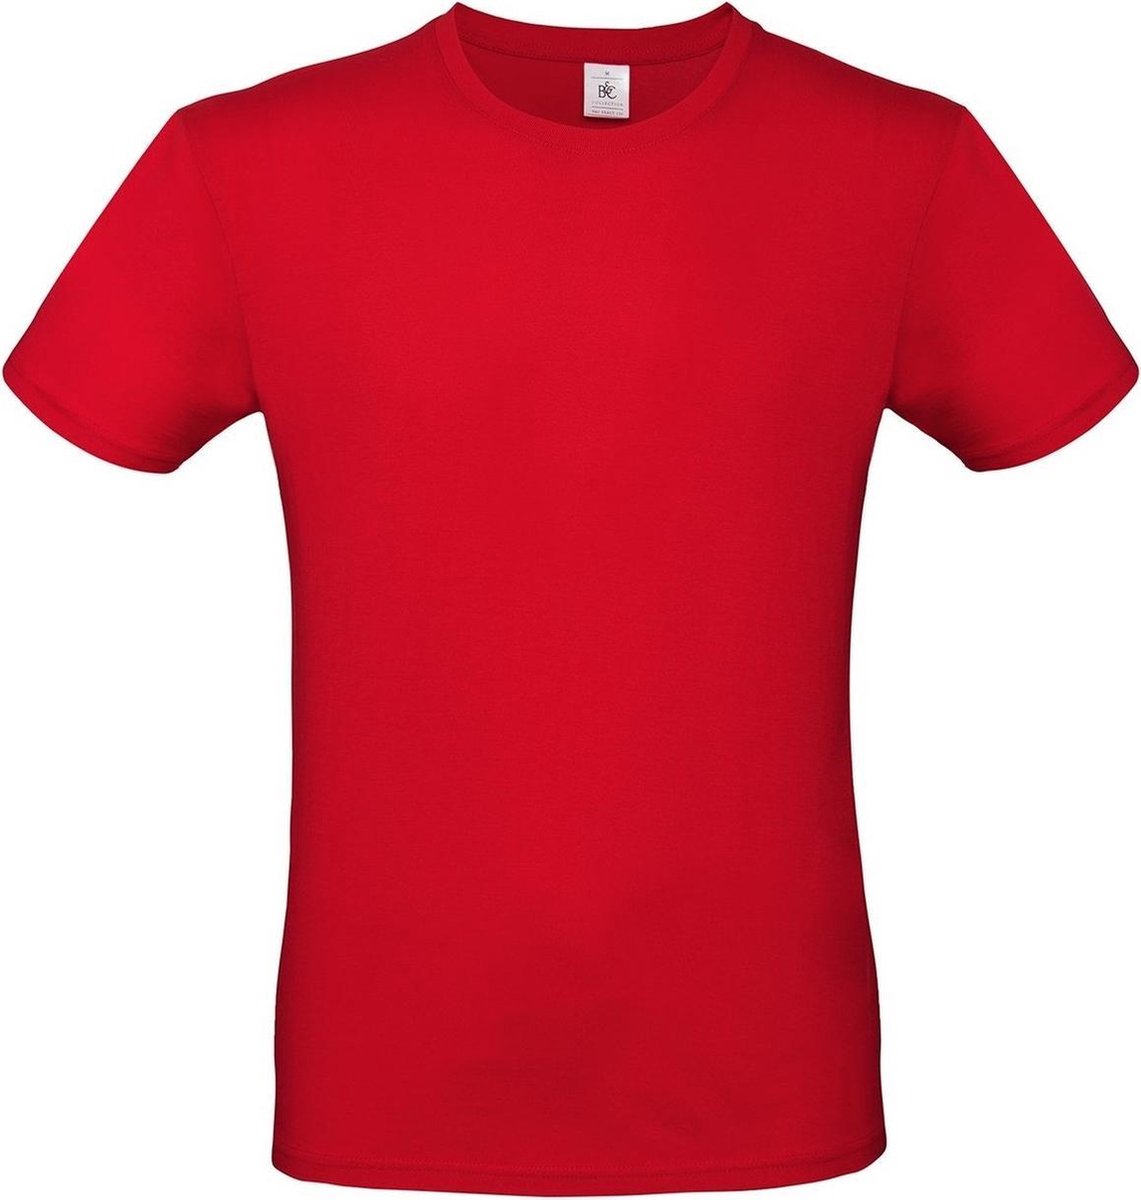 Set van 3x stuks rood basic t-shirt met ronde hals voor heren - katoen - 145 grams - rode shirts / kleding, maat: M (50)